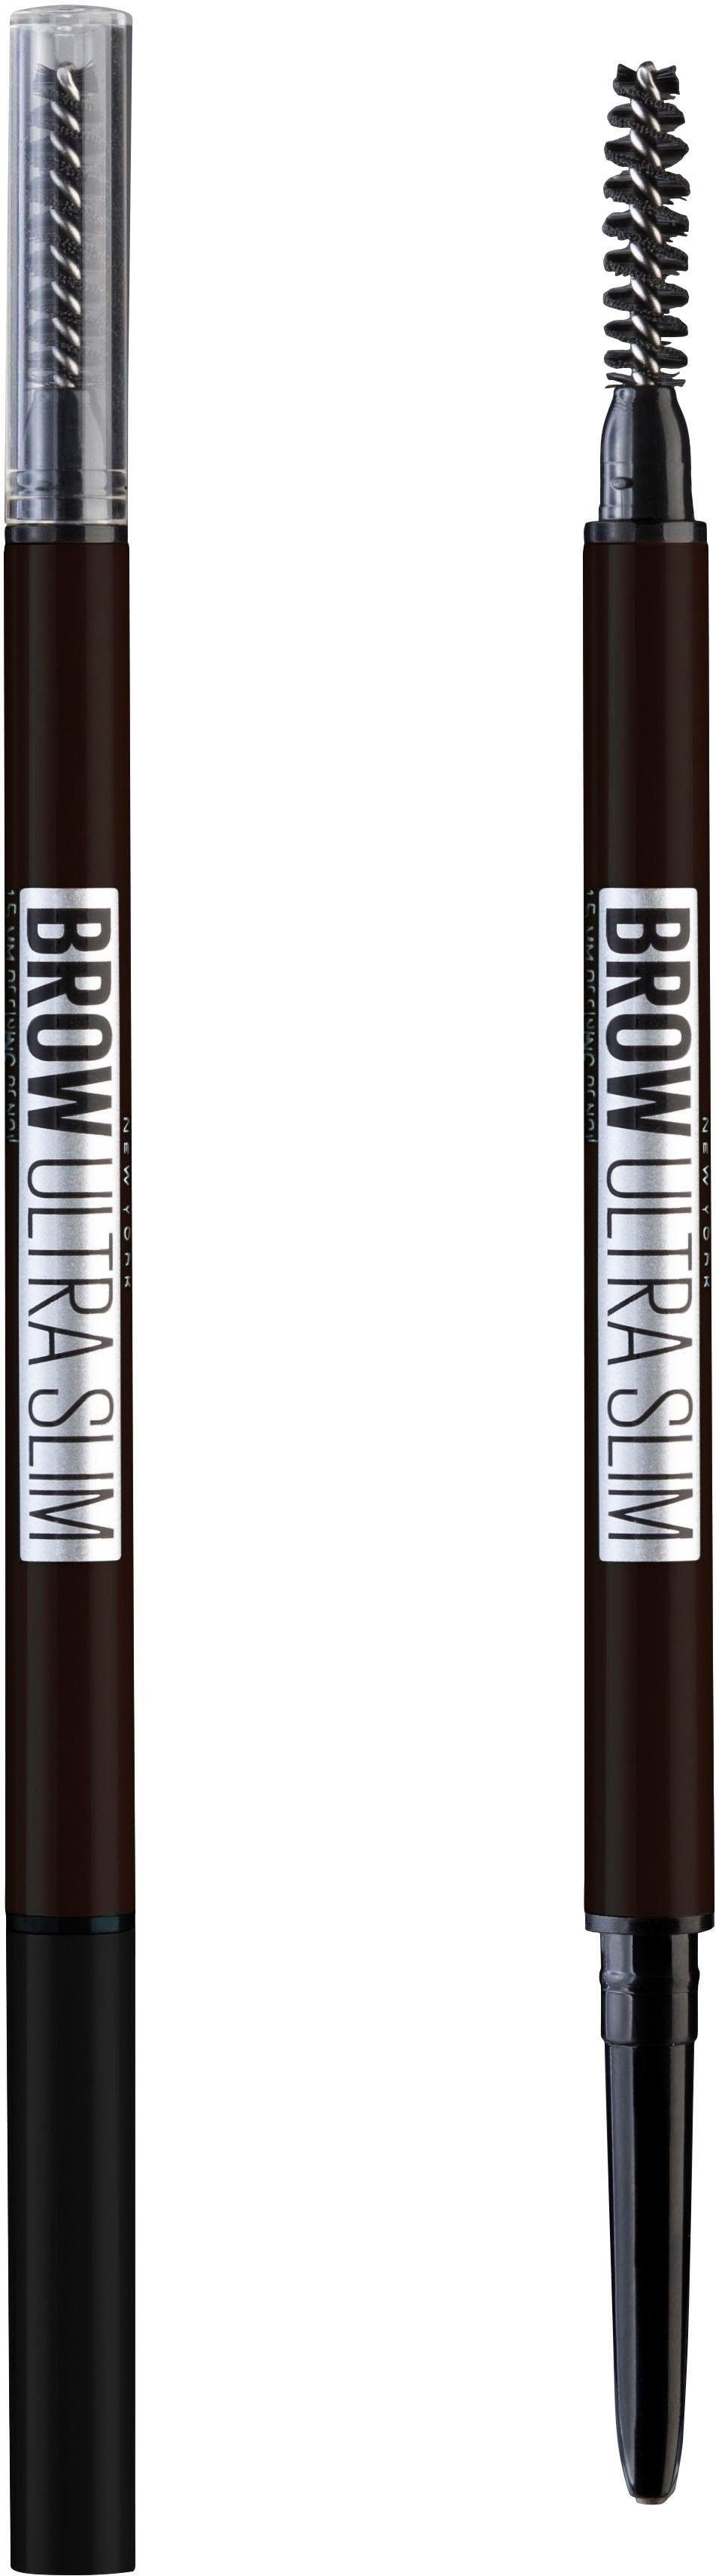 MAYBELLINE NEW YORK Brow definierte Augenbrauen Ultra Augenbrauen-Stift brown Nr. 4 für Liner, medium Slim Browliner